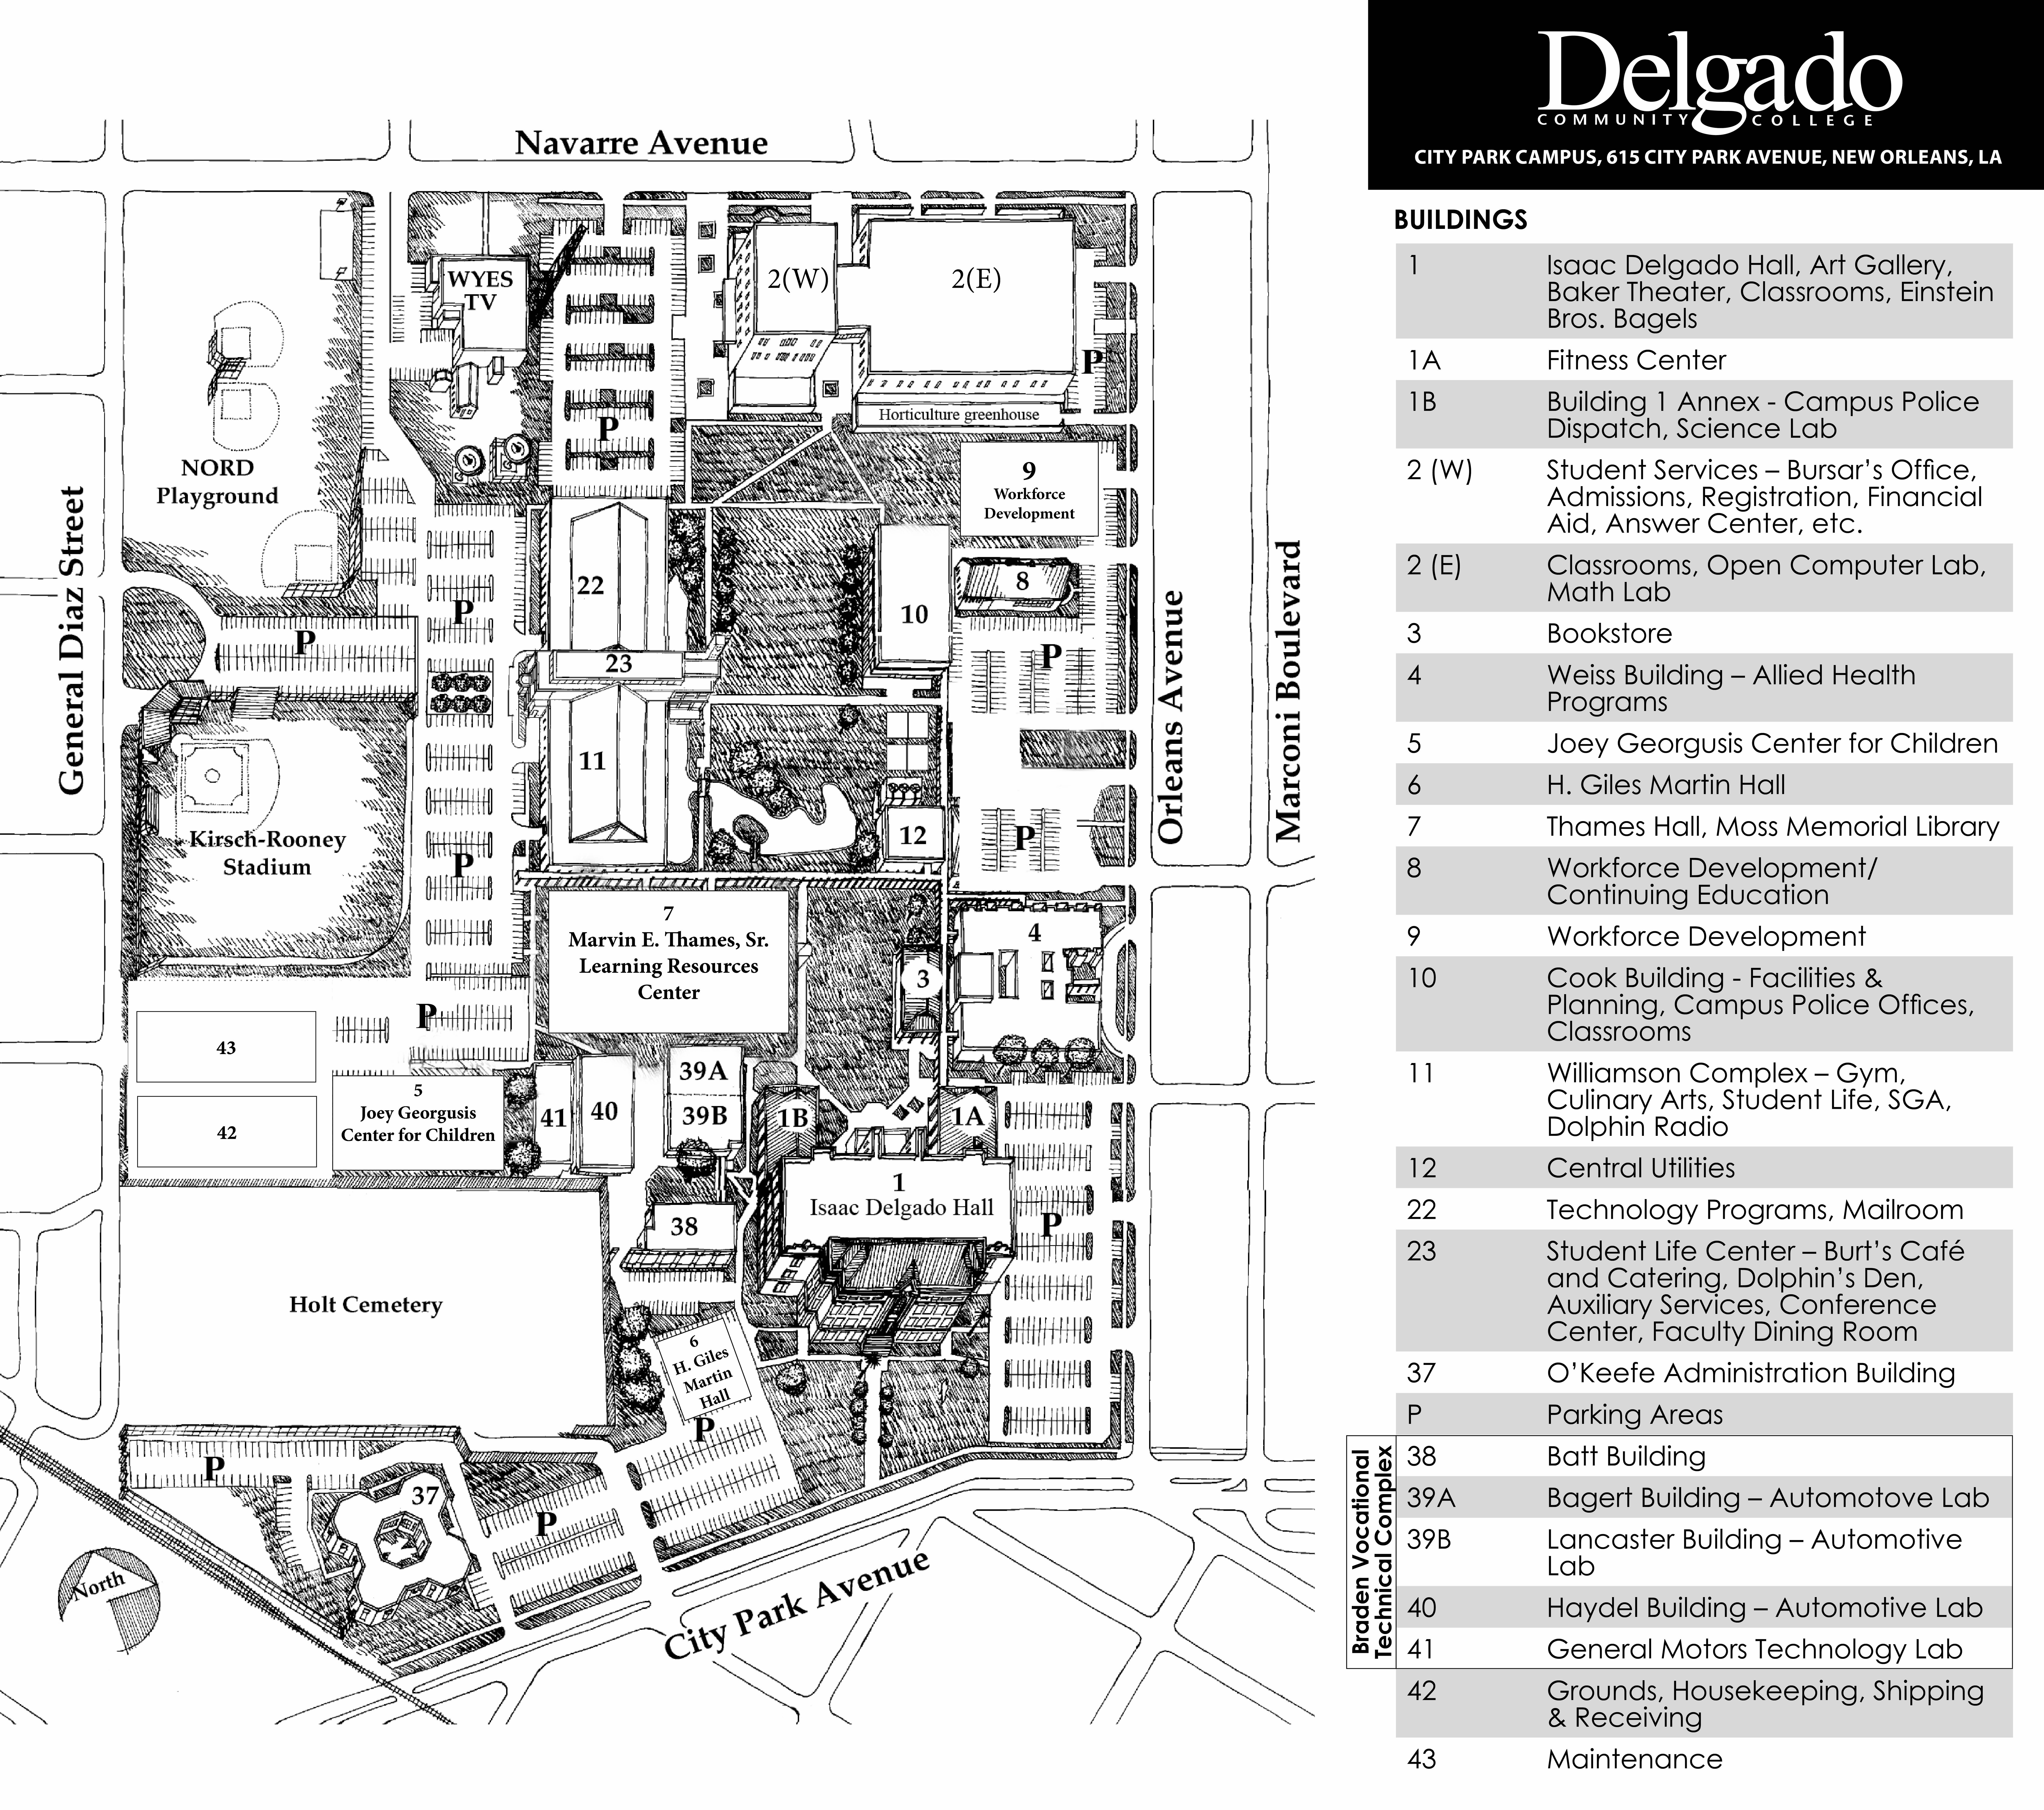 Map of Delgado City Park Campus